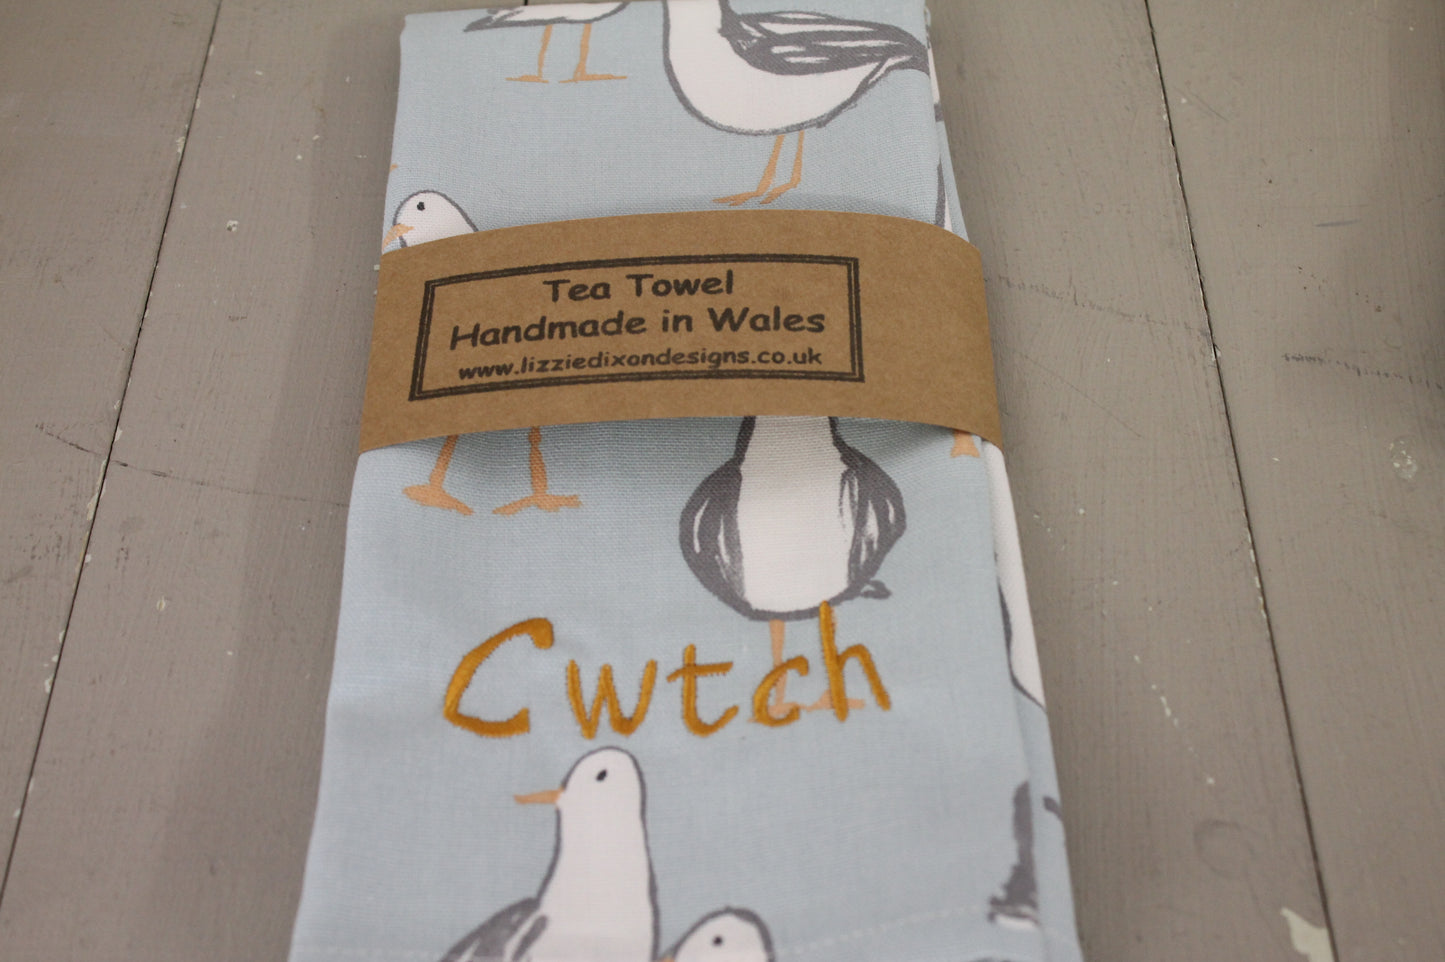 Cwtch Duckegg Seagull Tea Towel